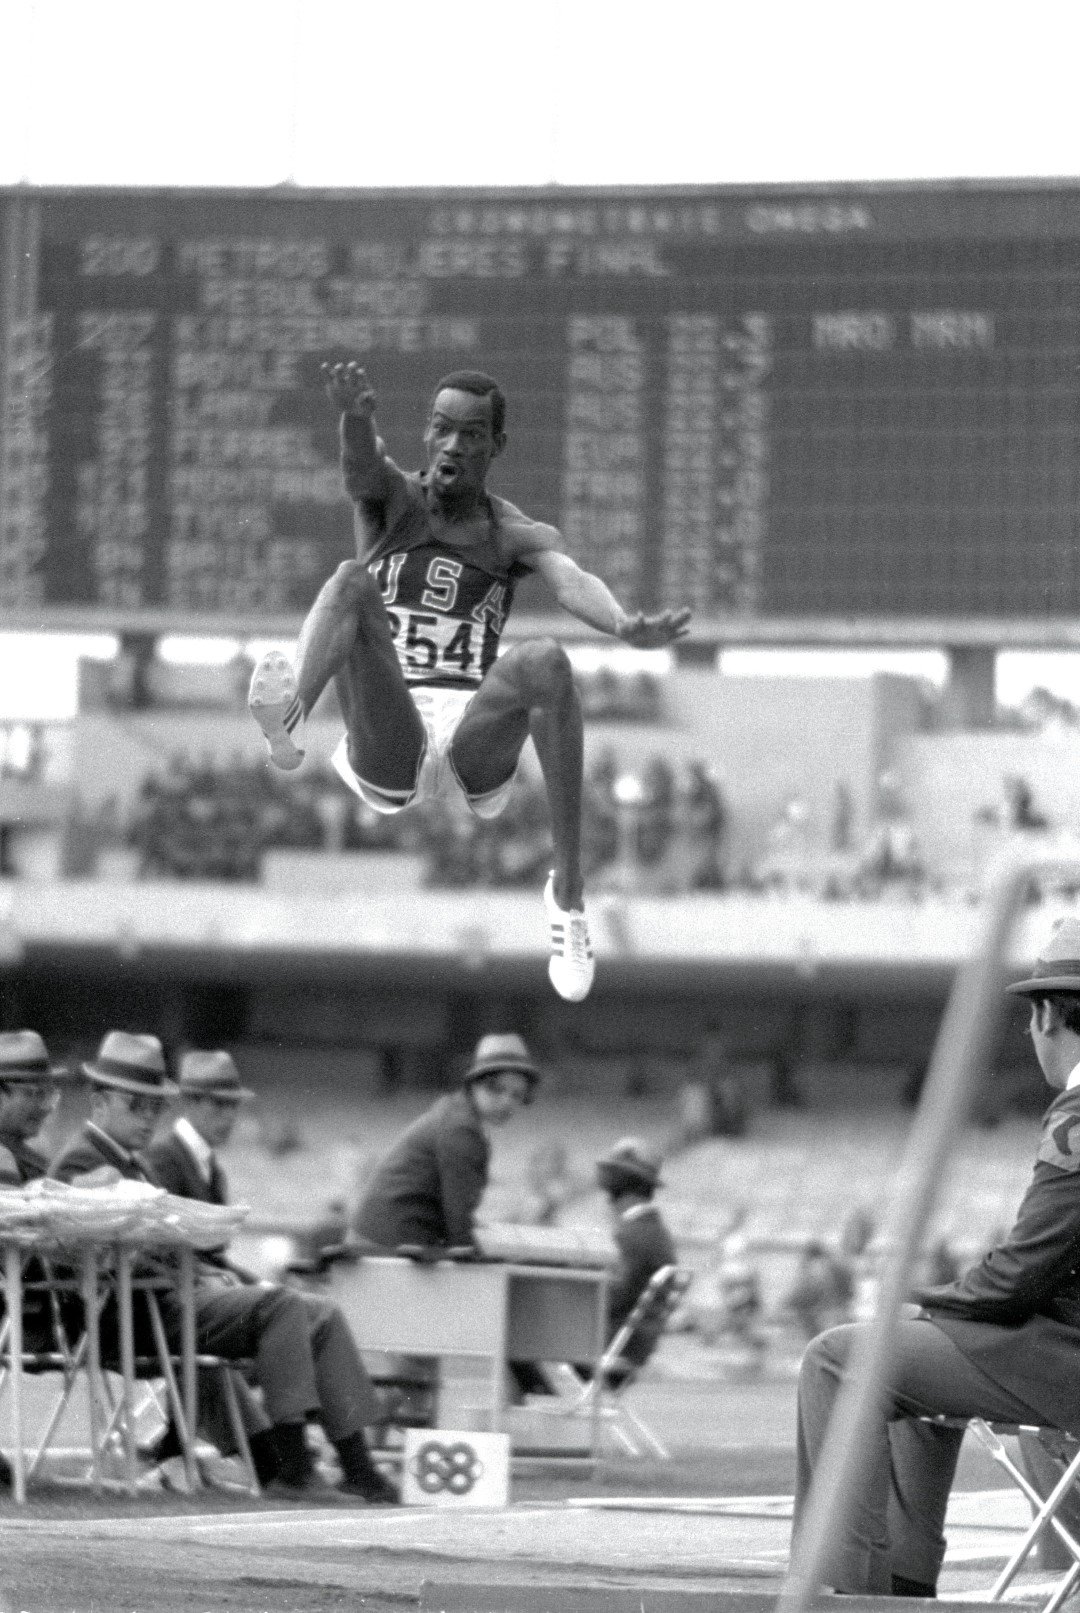 Скокът на века. През 1968 г. на игрите в Мексико Сити, от Боб Биймън се очаква да спечели титлата. Той е спечелил 20 от последните 22 състезания преди Мексико, като скачал в този период и рекордните 9.39 м в сектора за дълъг скок преди Олимпиадата, но опи